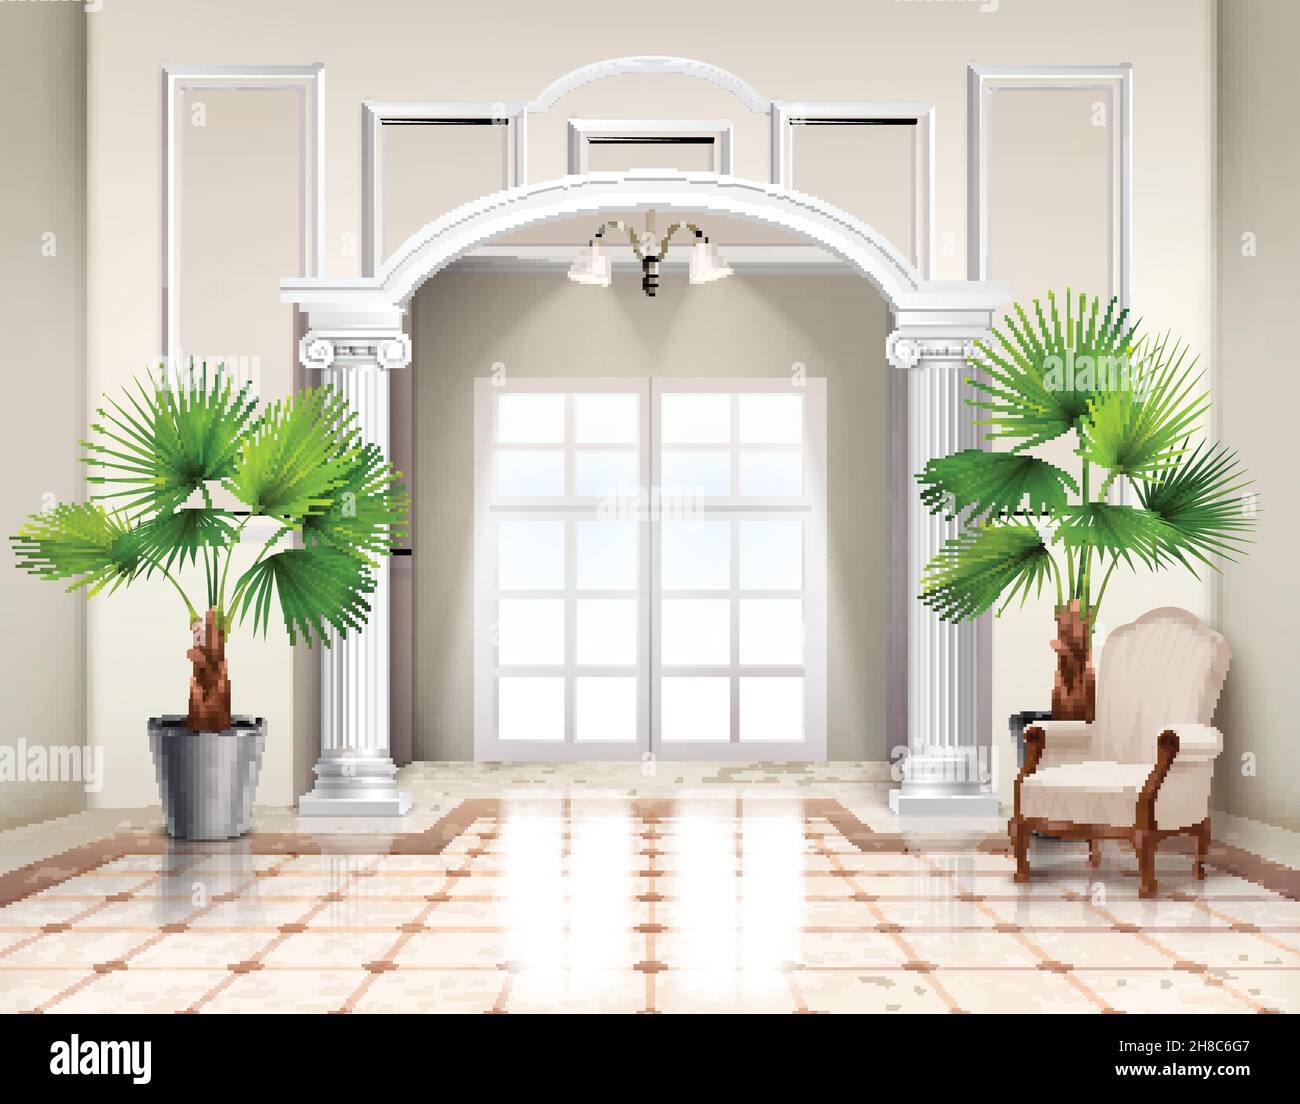 Indoor Topfpalmen als dekorative Zimmerpflanzen im klassischen Stil Geräumige Vestibül Innenarchitektur realistische Vektor-Illustration Stock Vektor